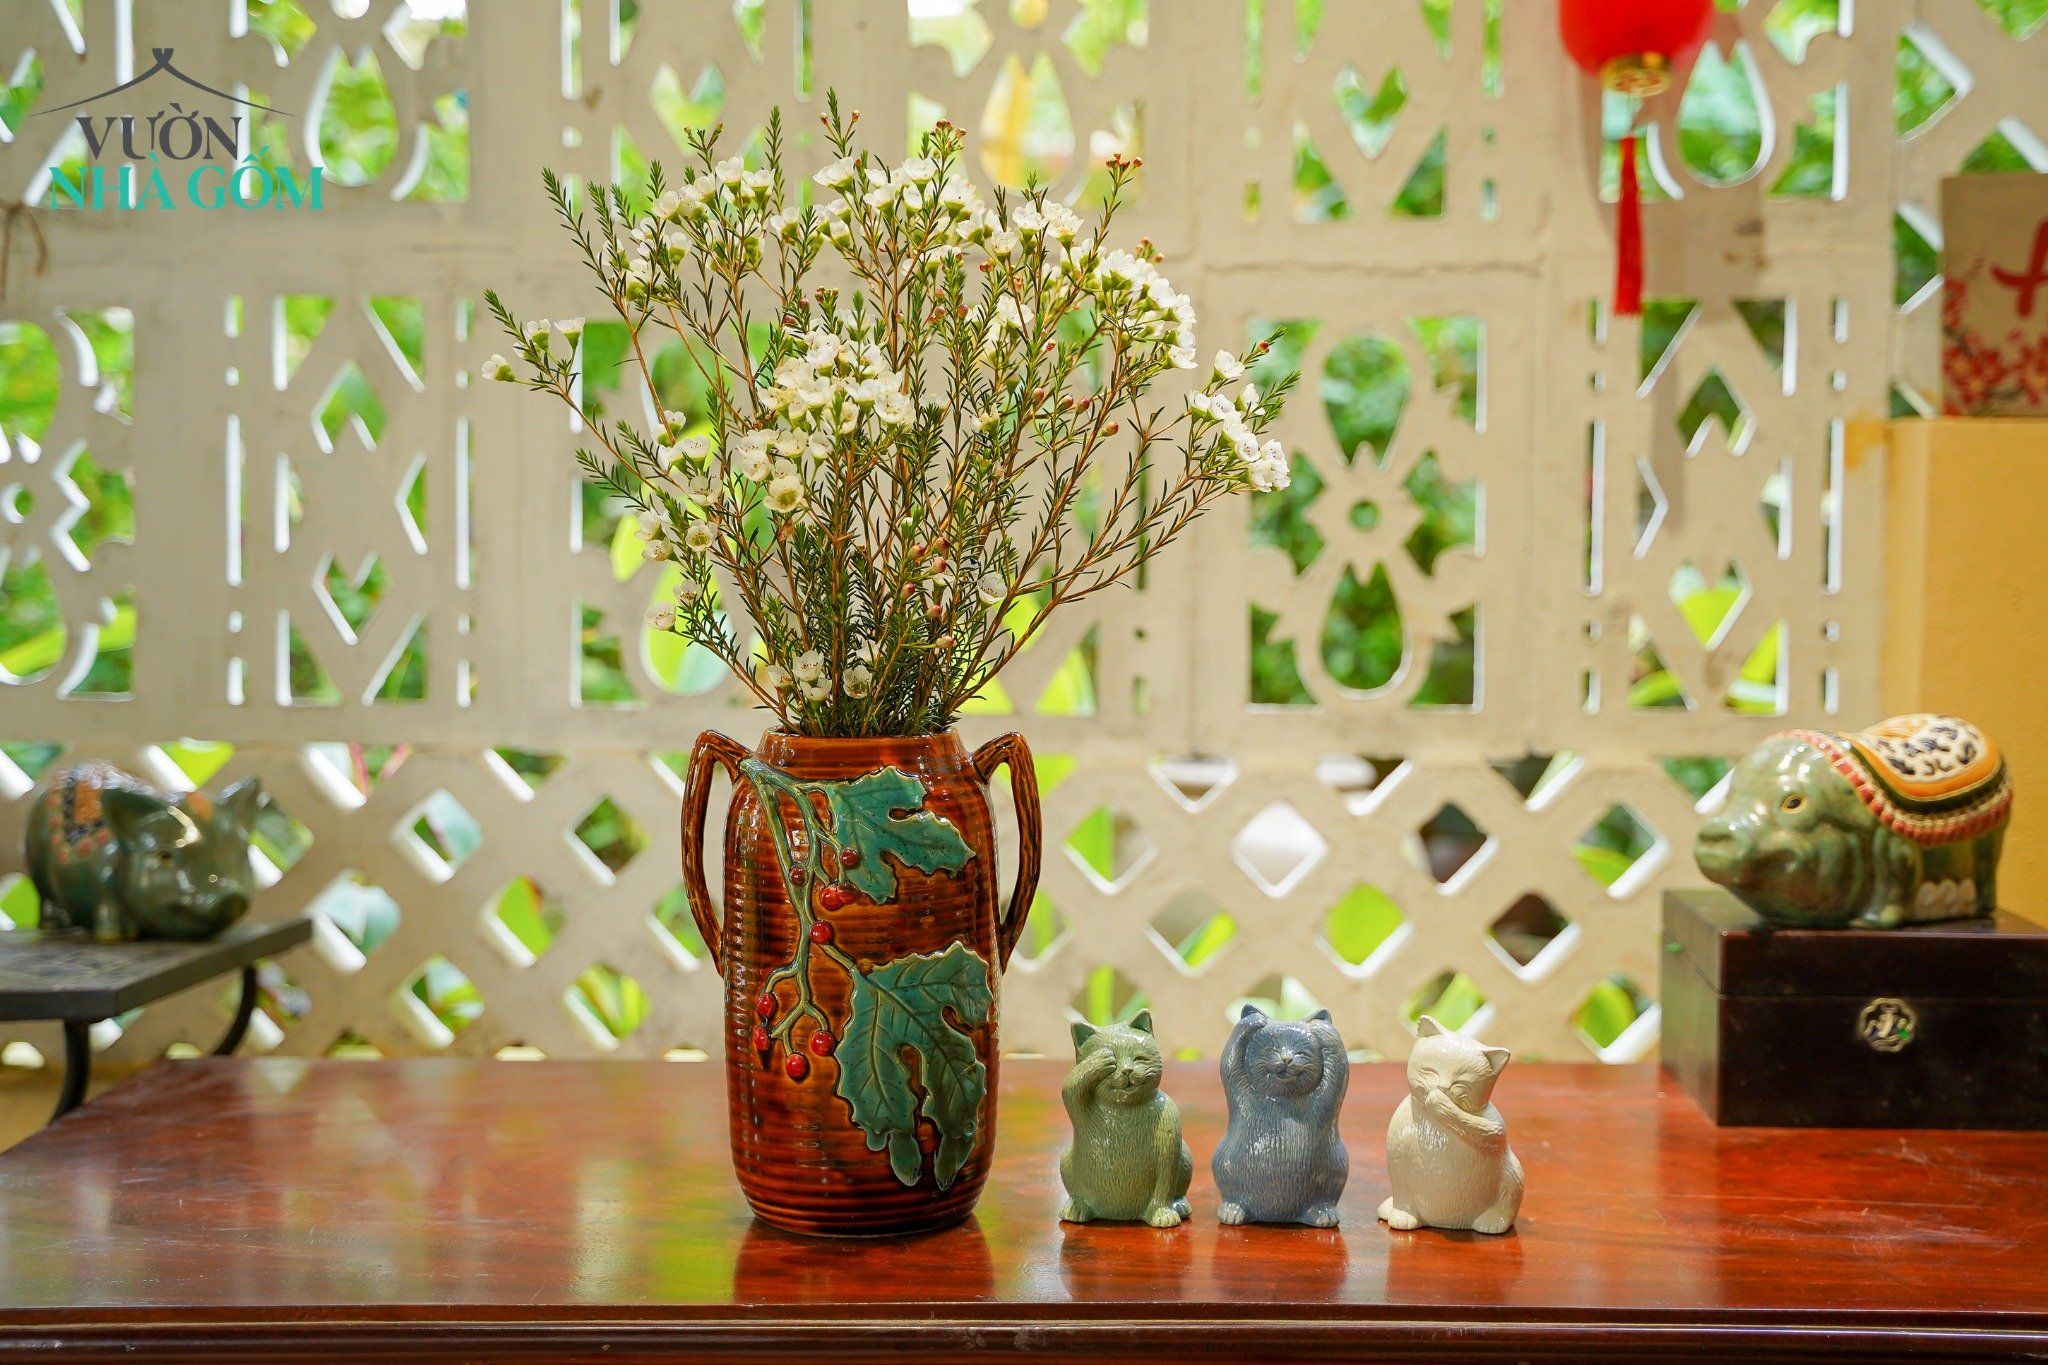  Bộ tượng Mèo Tam Không vui vẻ, màu xanh lá - xanh dương - trắng, xưởng Thủ Biên, C11cm x R7cm 